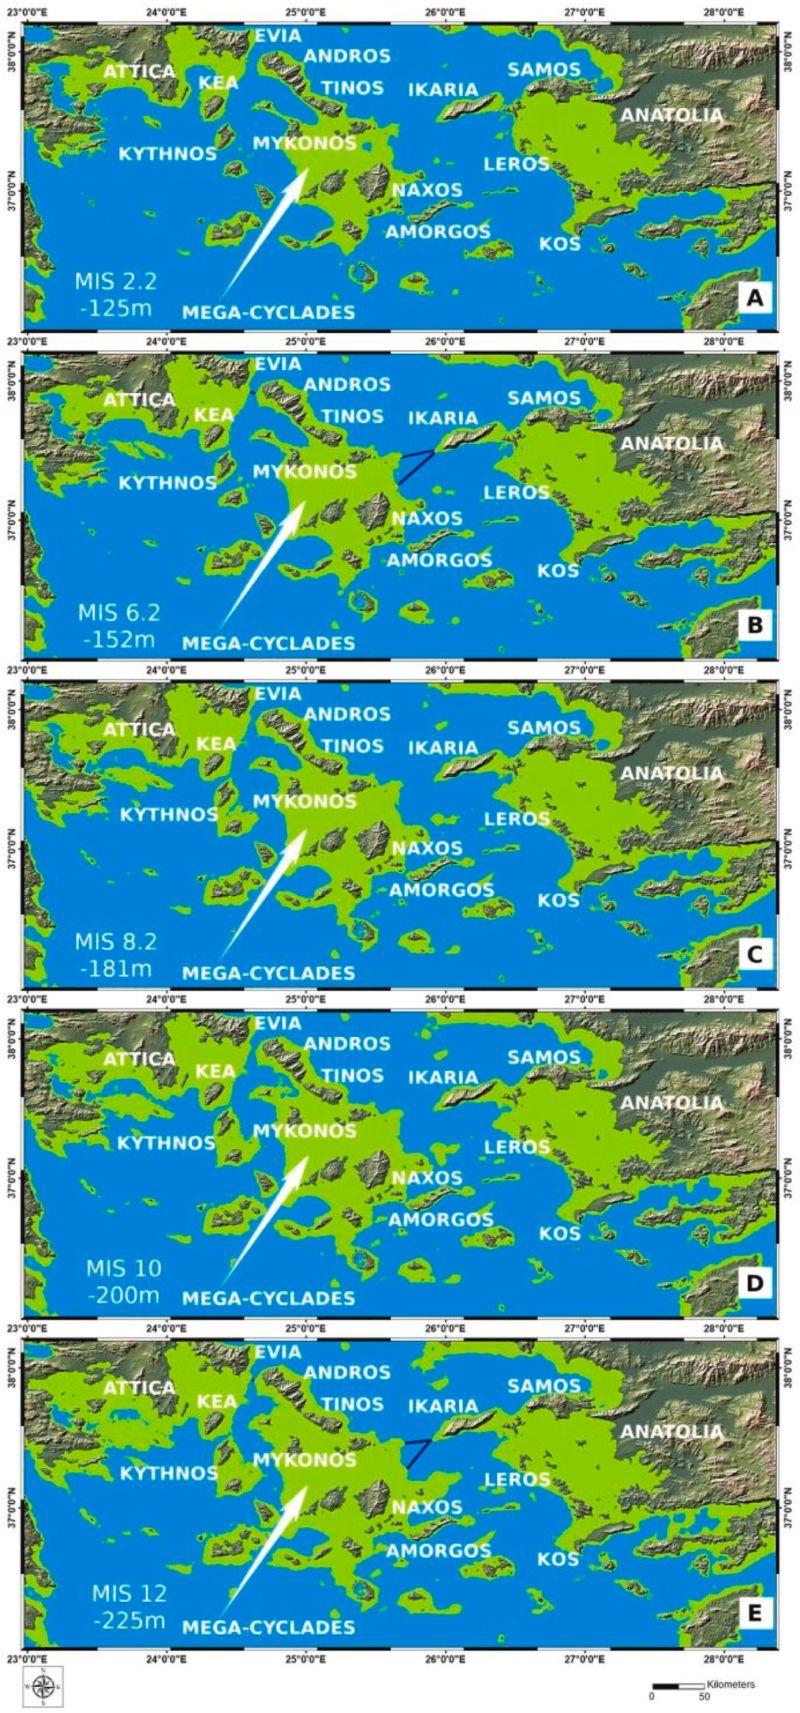 Стародавні люди могли плавати Середземним морем 450 000 років тому